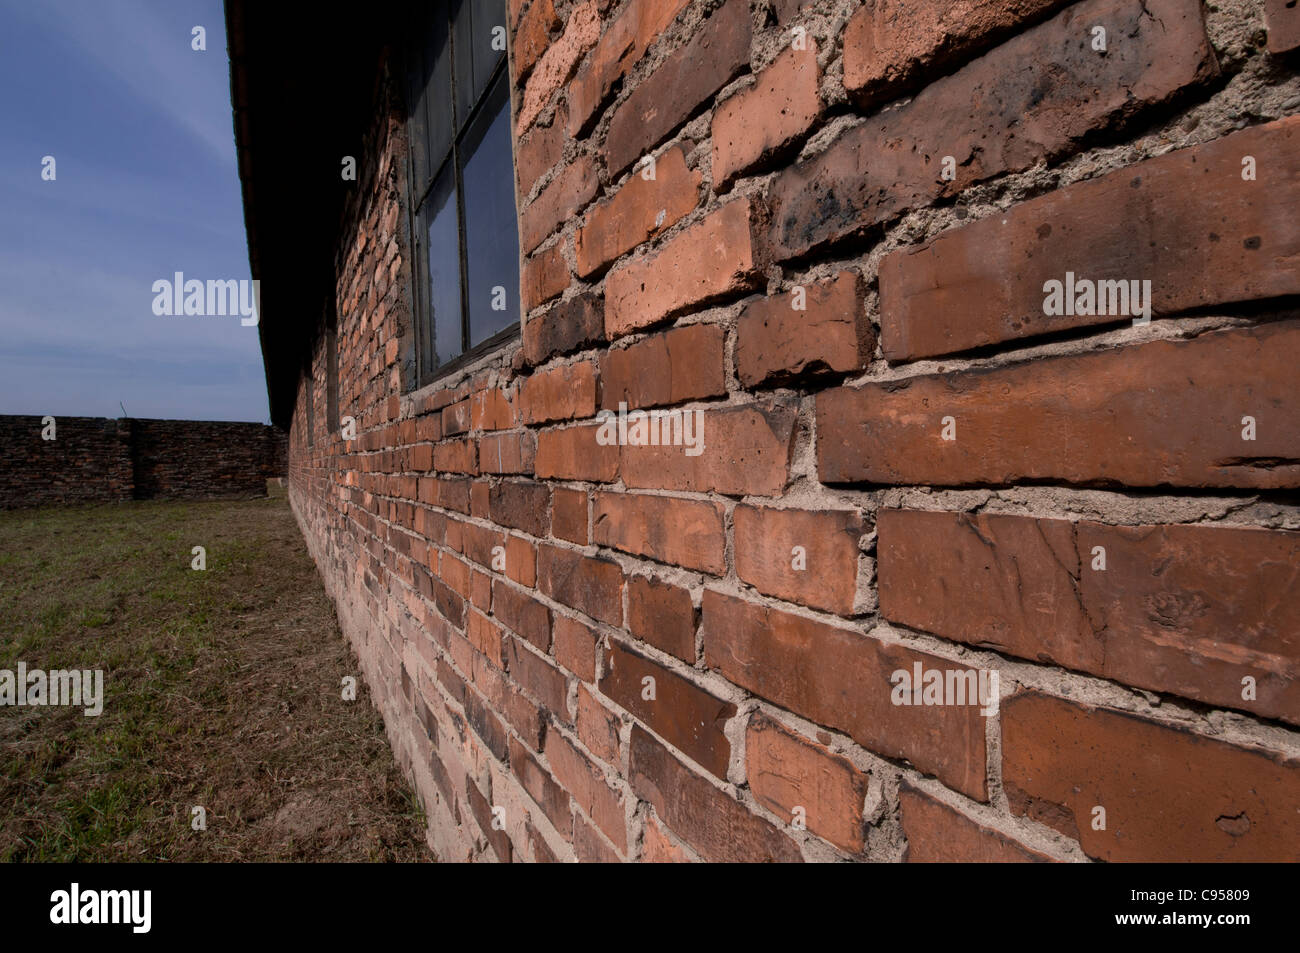 Colpo esterno dei detenuti nelle caserme - Auschwitz II - Birkenau sterminio camp, Polonia Foto Stock